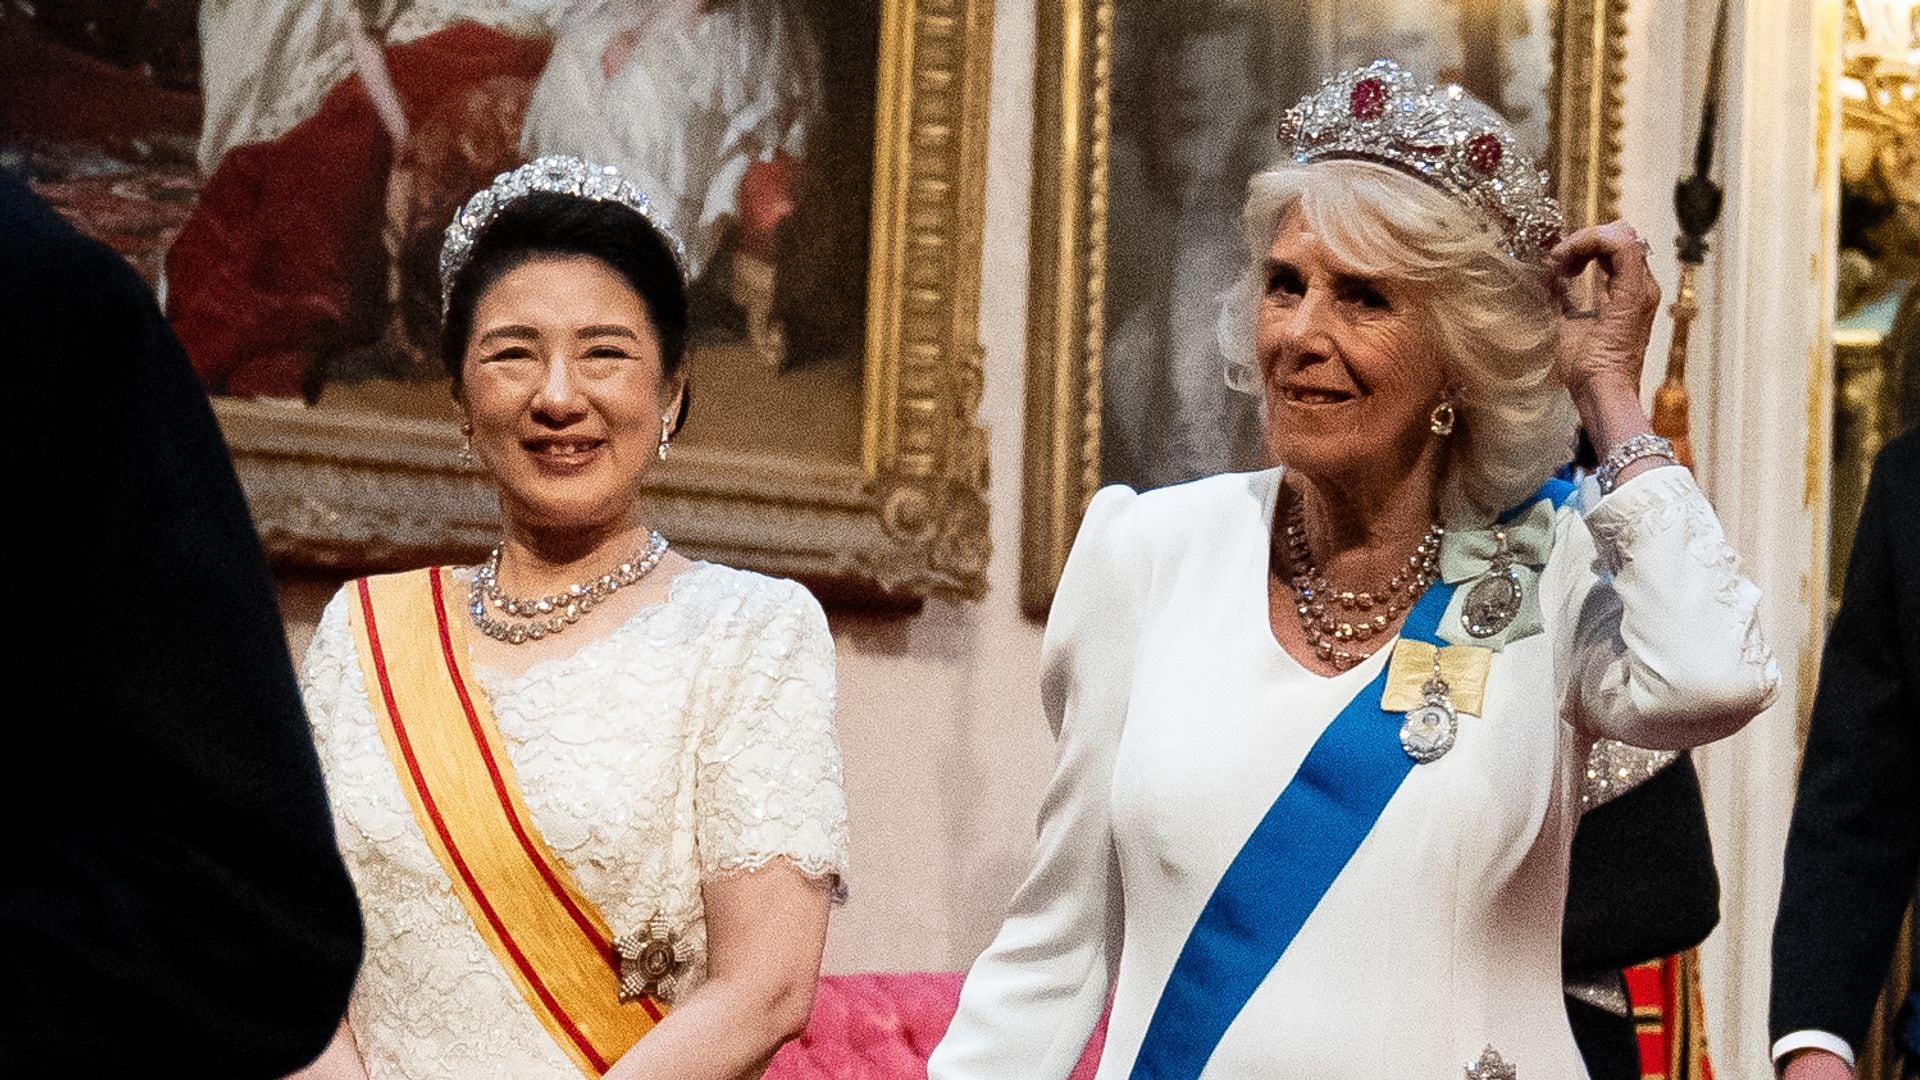 Analizamos lo que cuentan las joyas que la reina Camilla y la emperatriz Masako llevaron en Buckingham